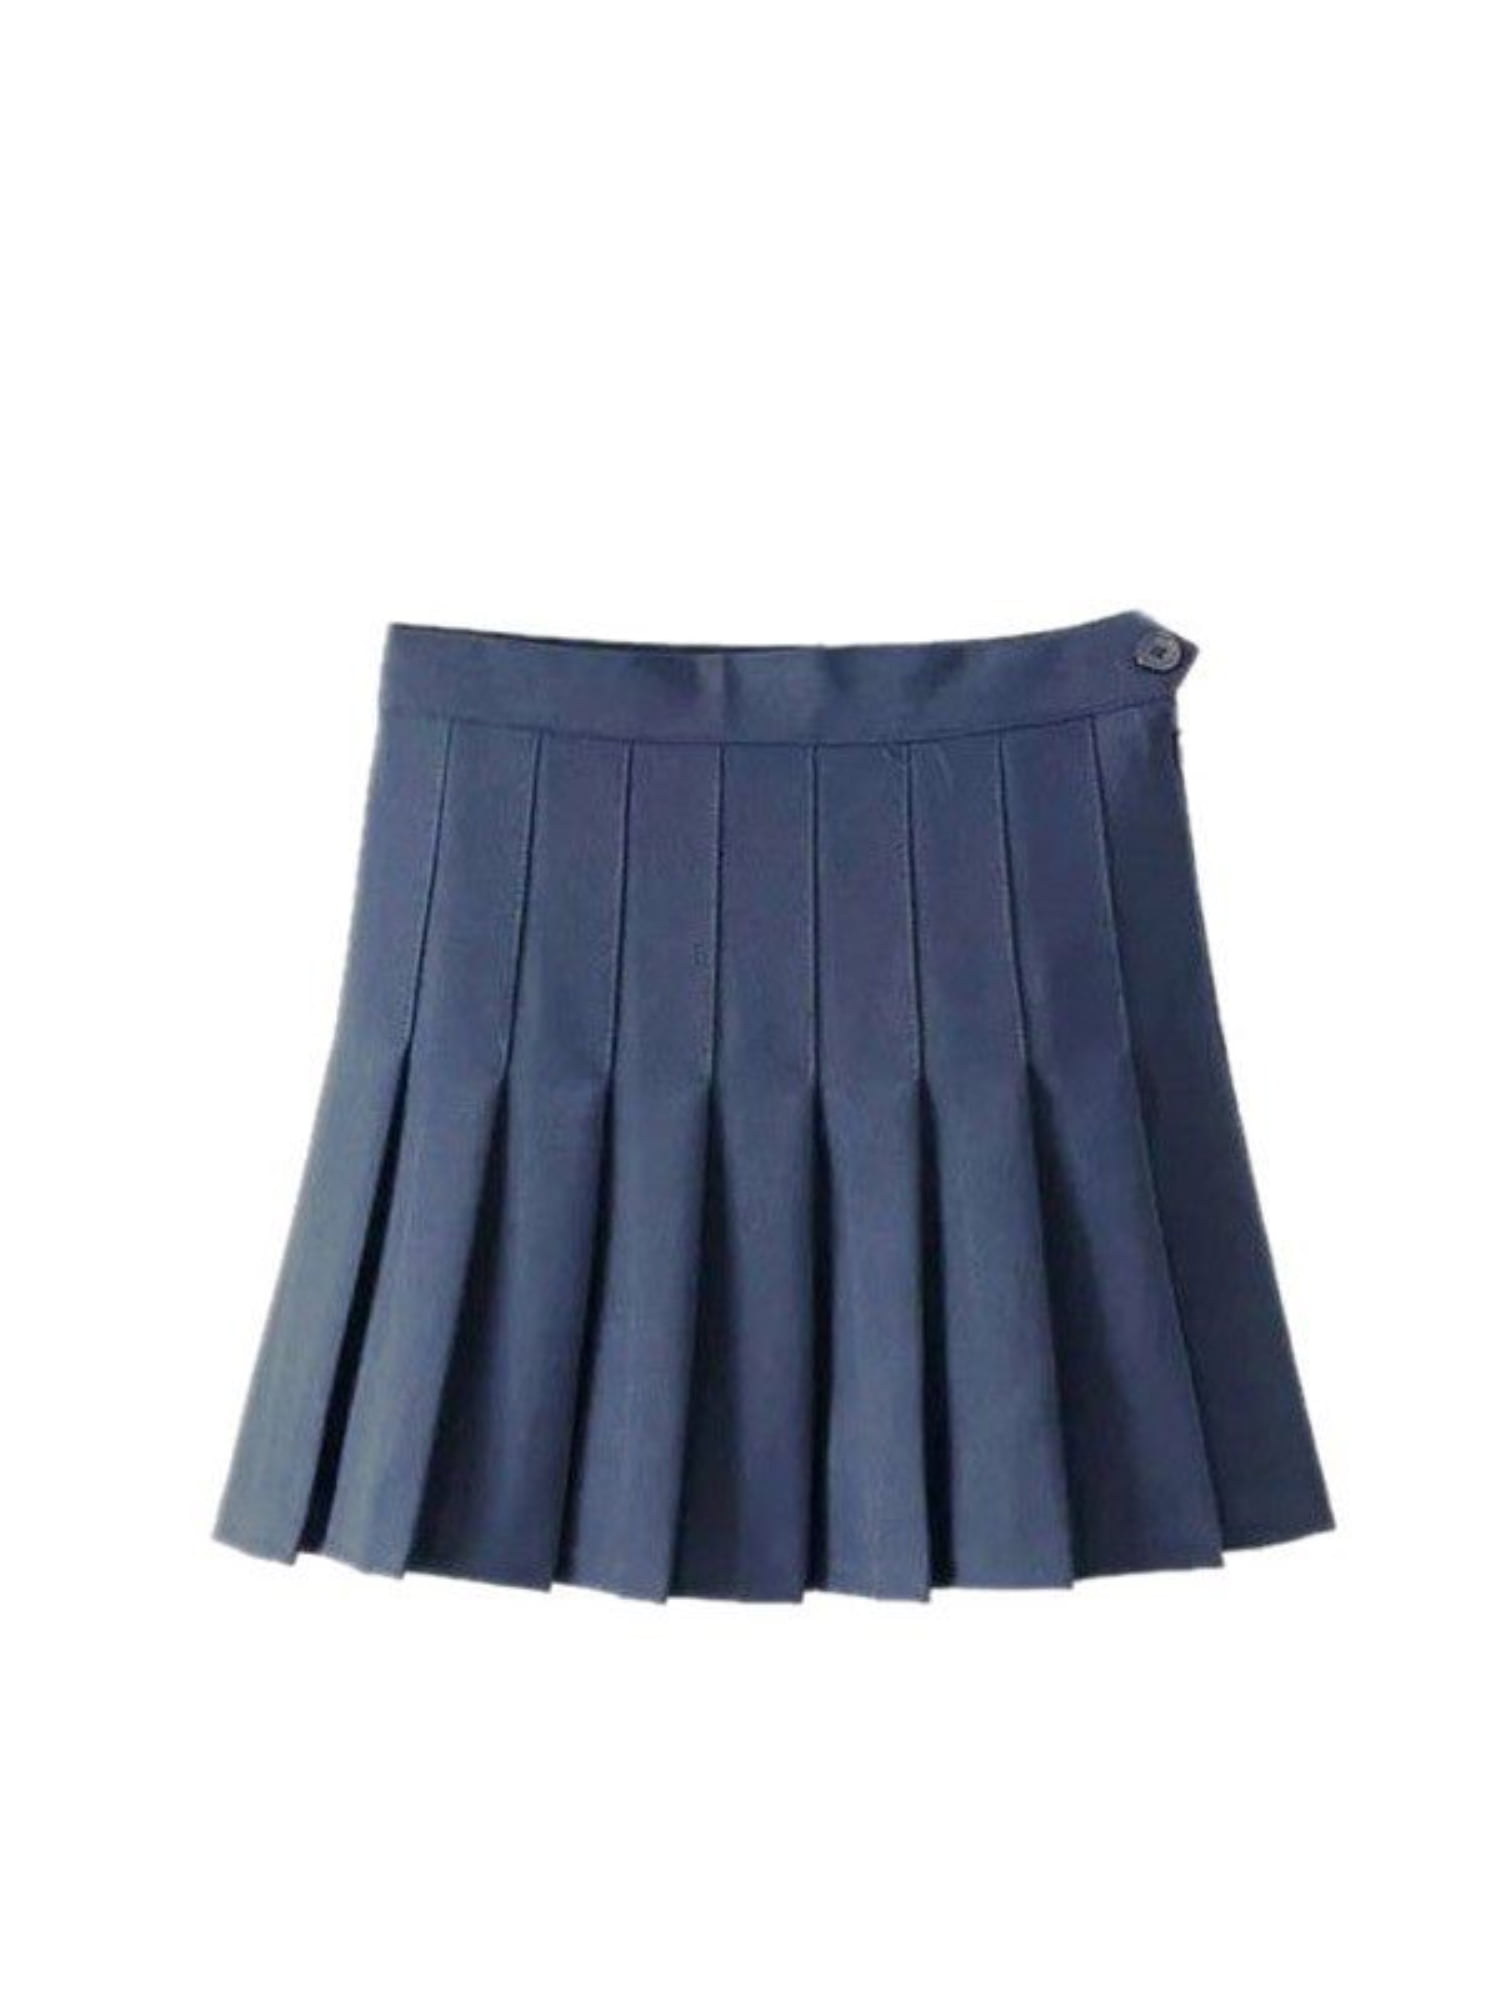 Women Girl Satin Short Mini Dress Skirt Pleated Retro Elastic Waist Sky Blue